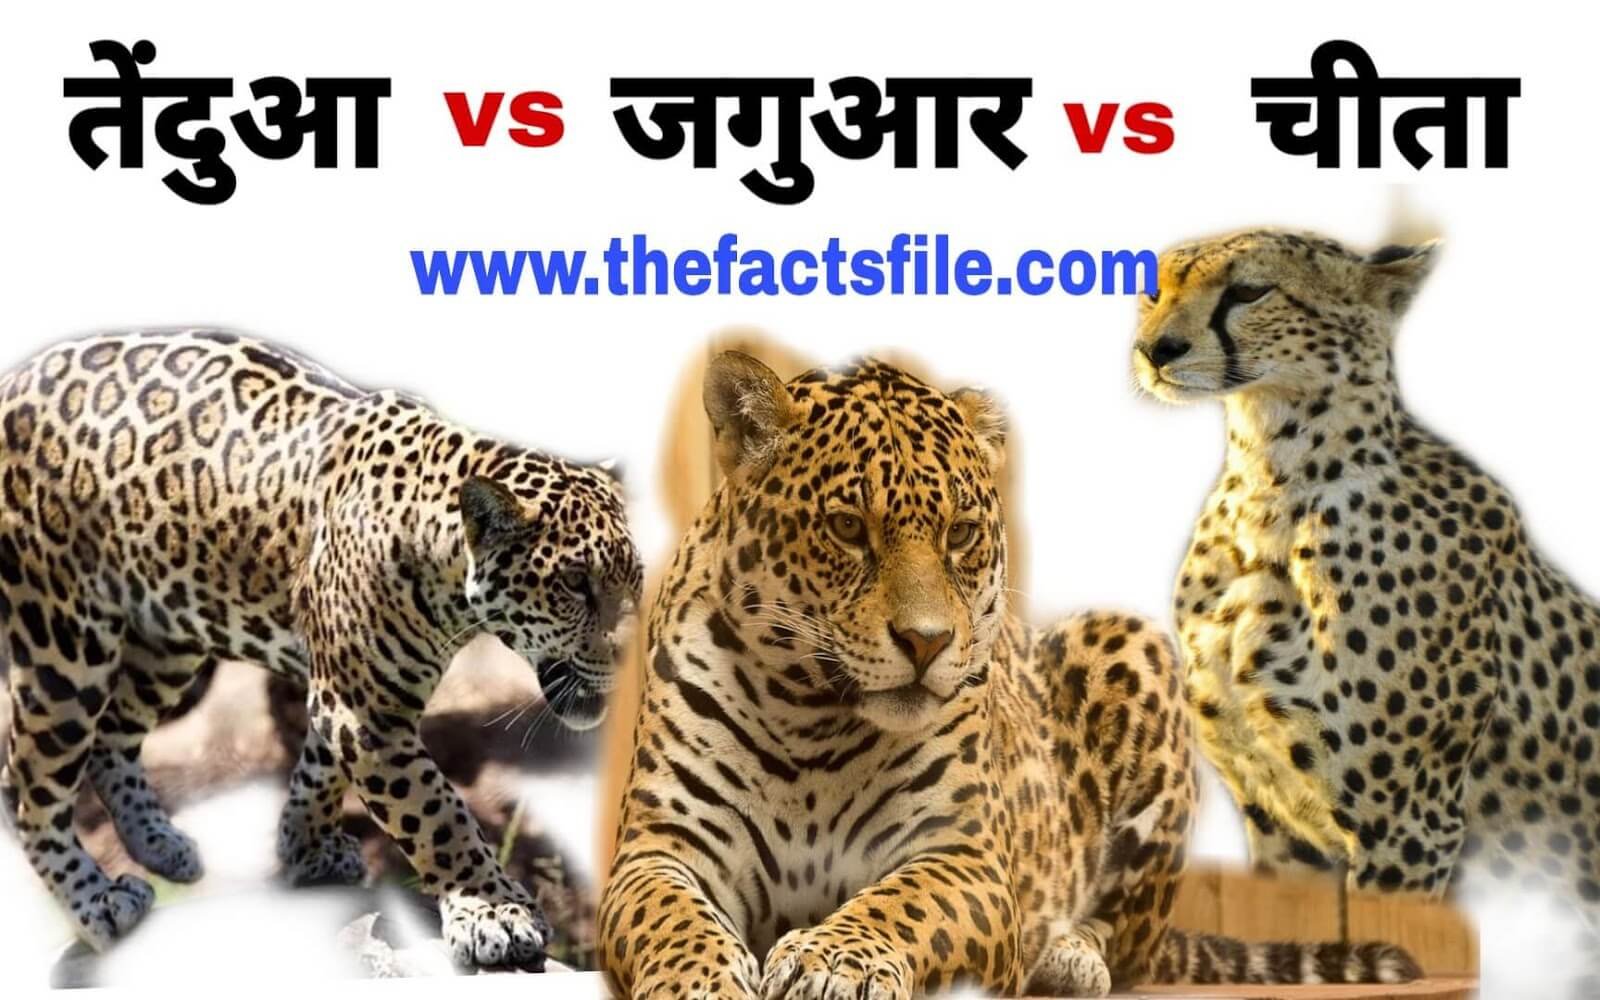 Cheetah vs jaguar vs Leopard | बिल्ली प्रजाति के यह तीन जानवरों के बीच में  क्या अंतर है? - चीते, जगुआर और तेंदुए में क्या फर्क है - The Facts File